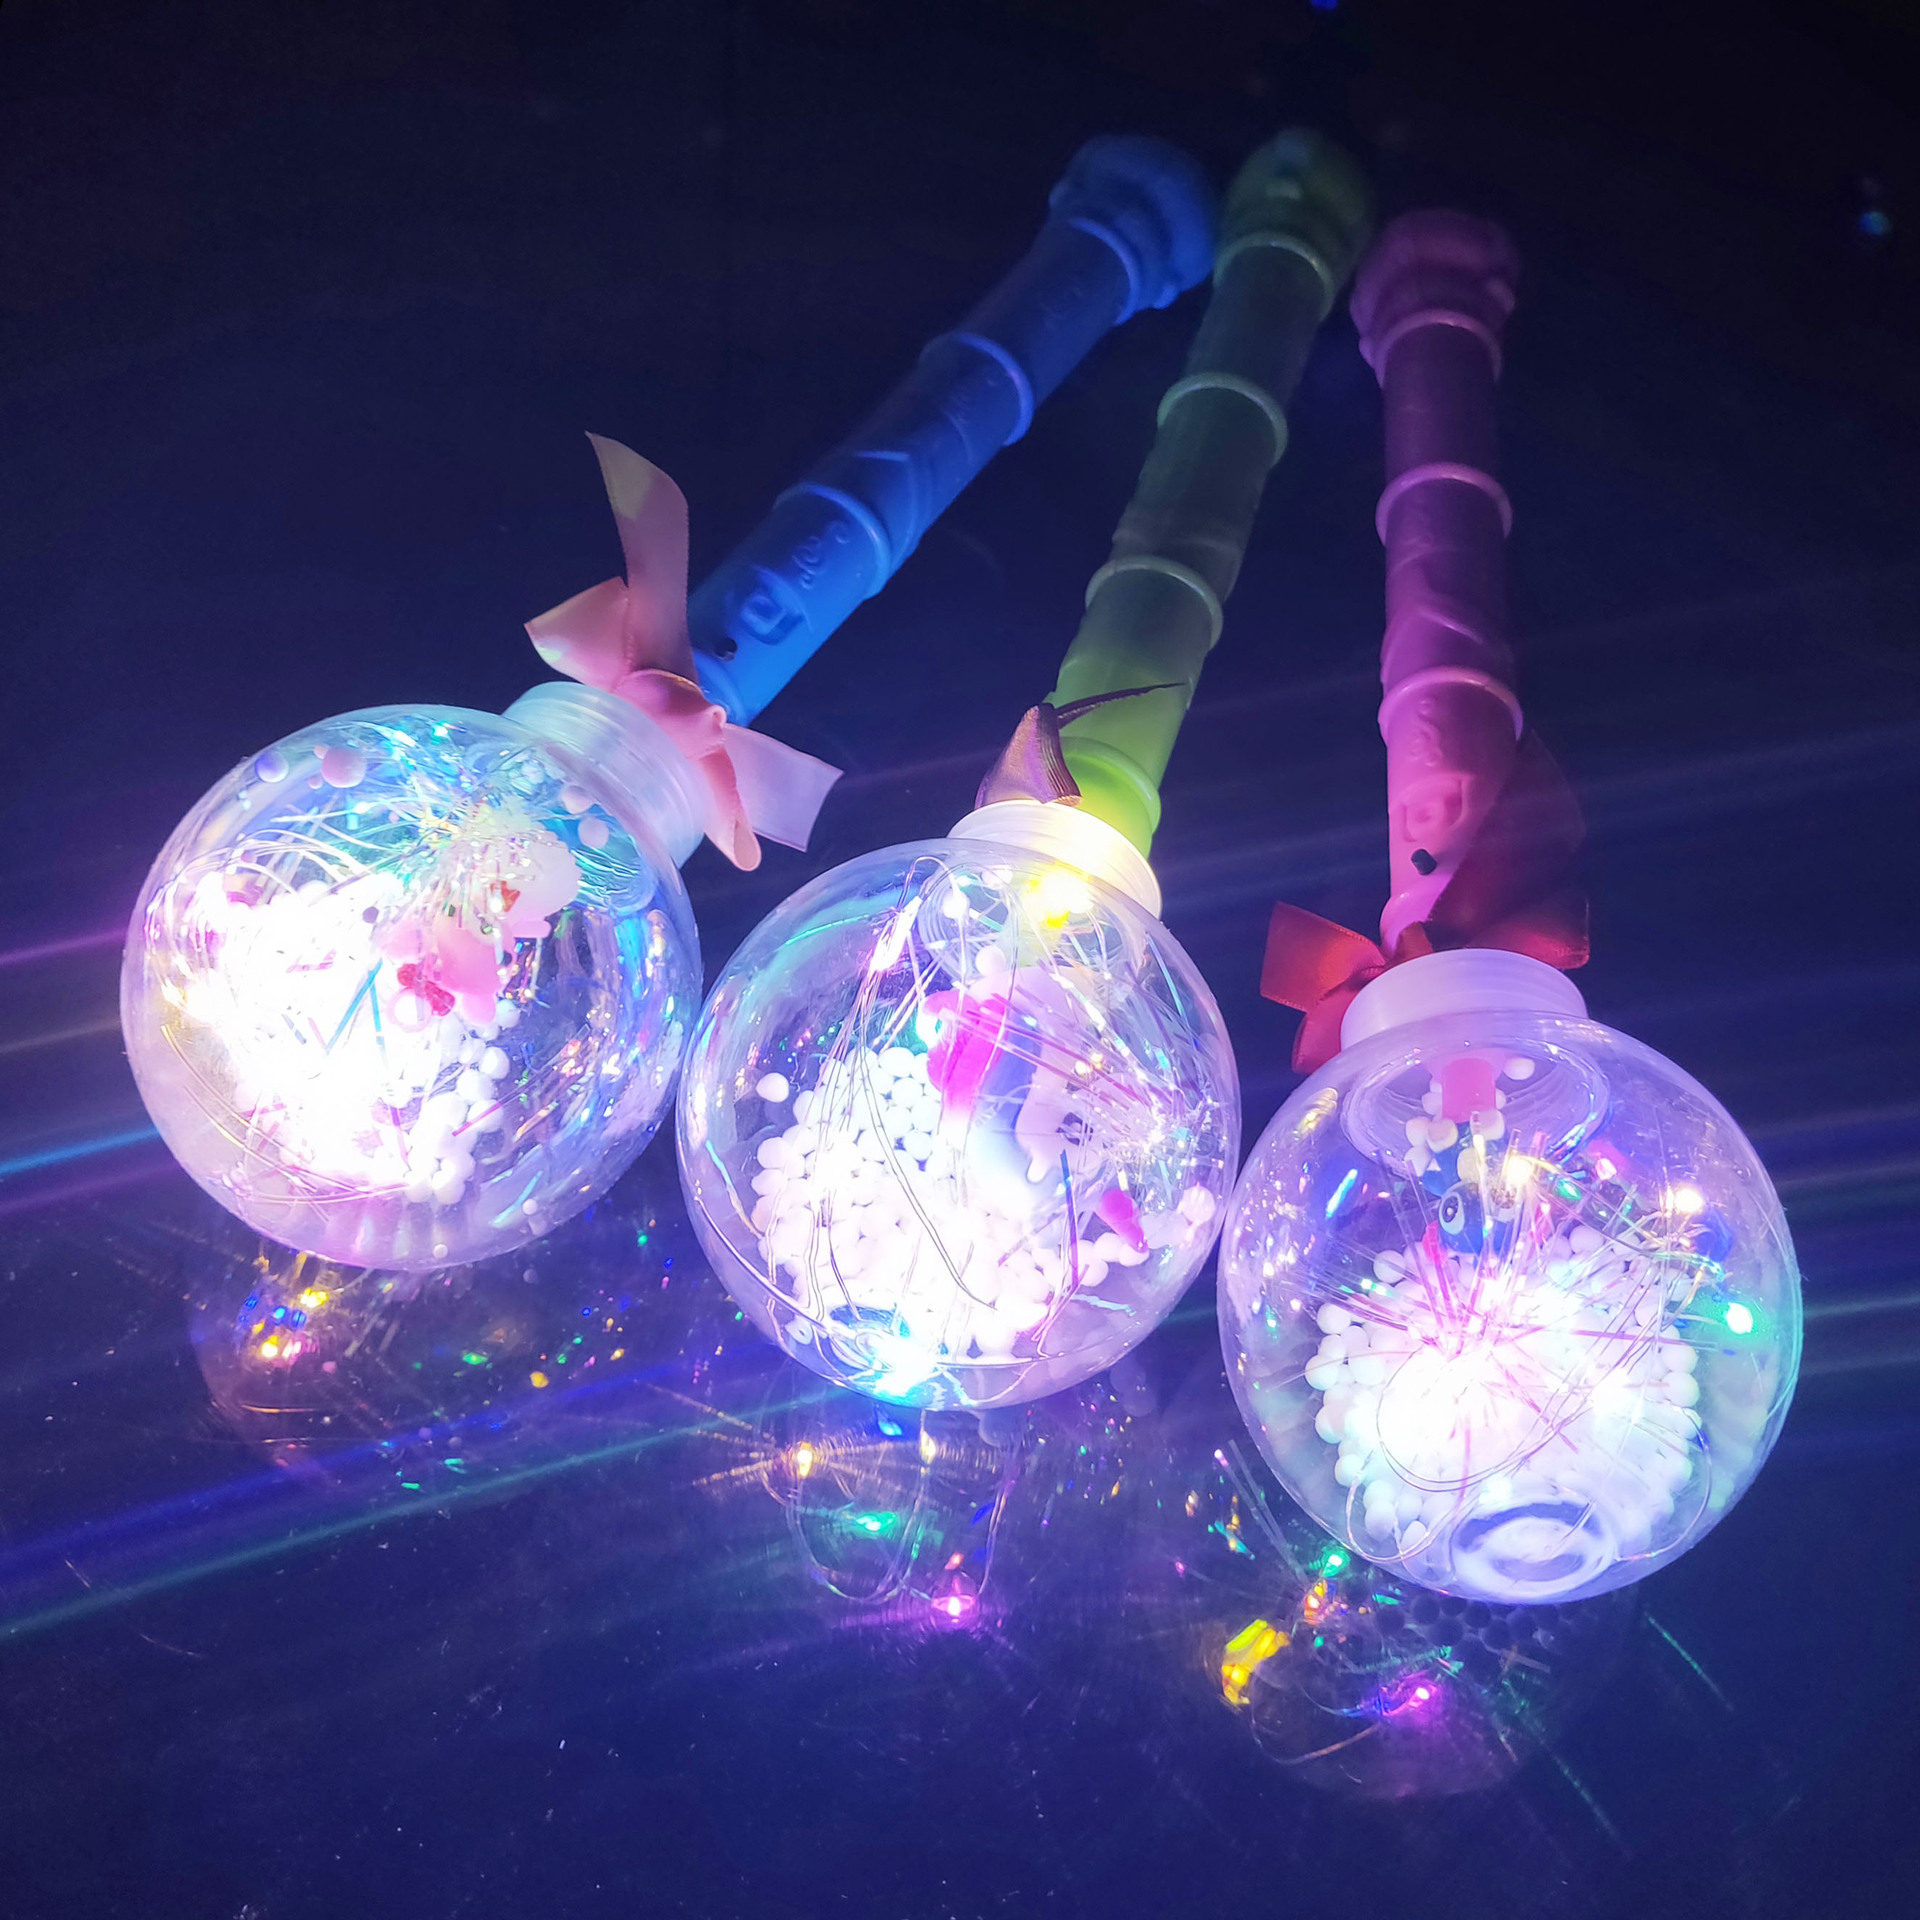 LED閃光手柄波波球燈光棒兒童新款發光玩具地攤爆款波波球魔法棒